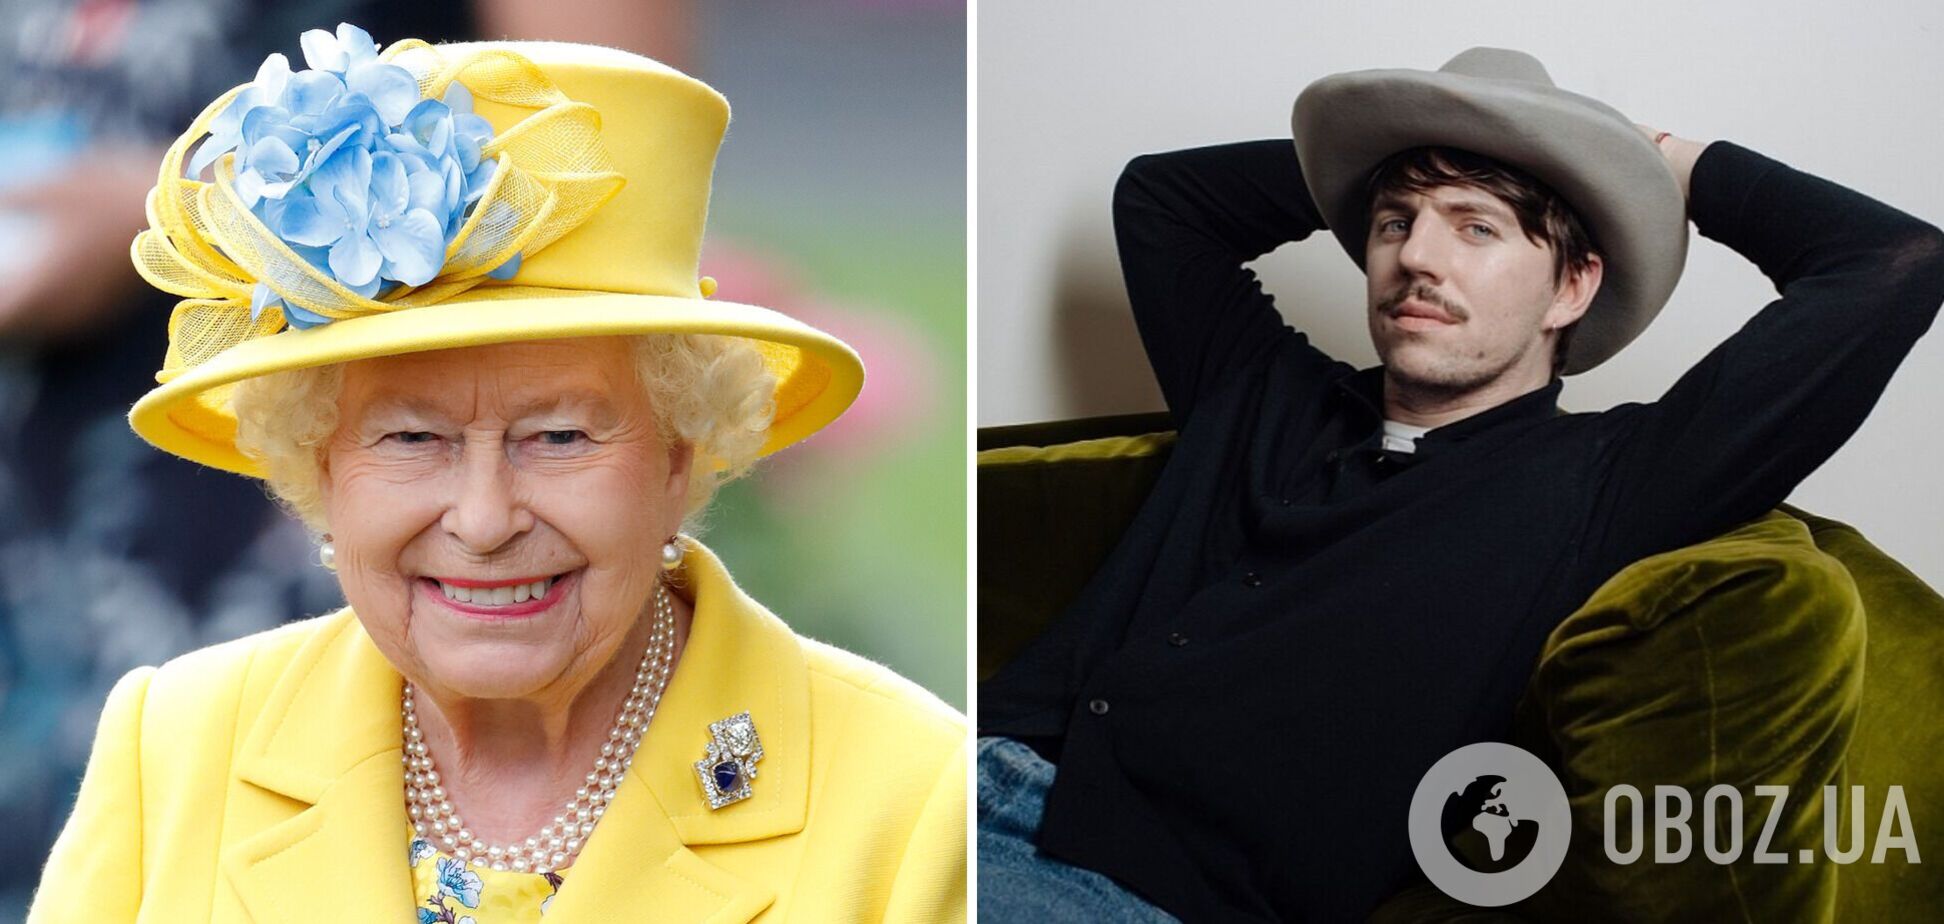 Букингемский дворец отправил официальное письмо украинскому дизайнеру, создавшему шляпку для Елизаветы II: что в нем написали